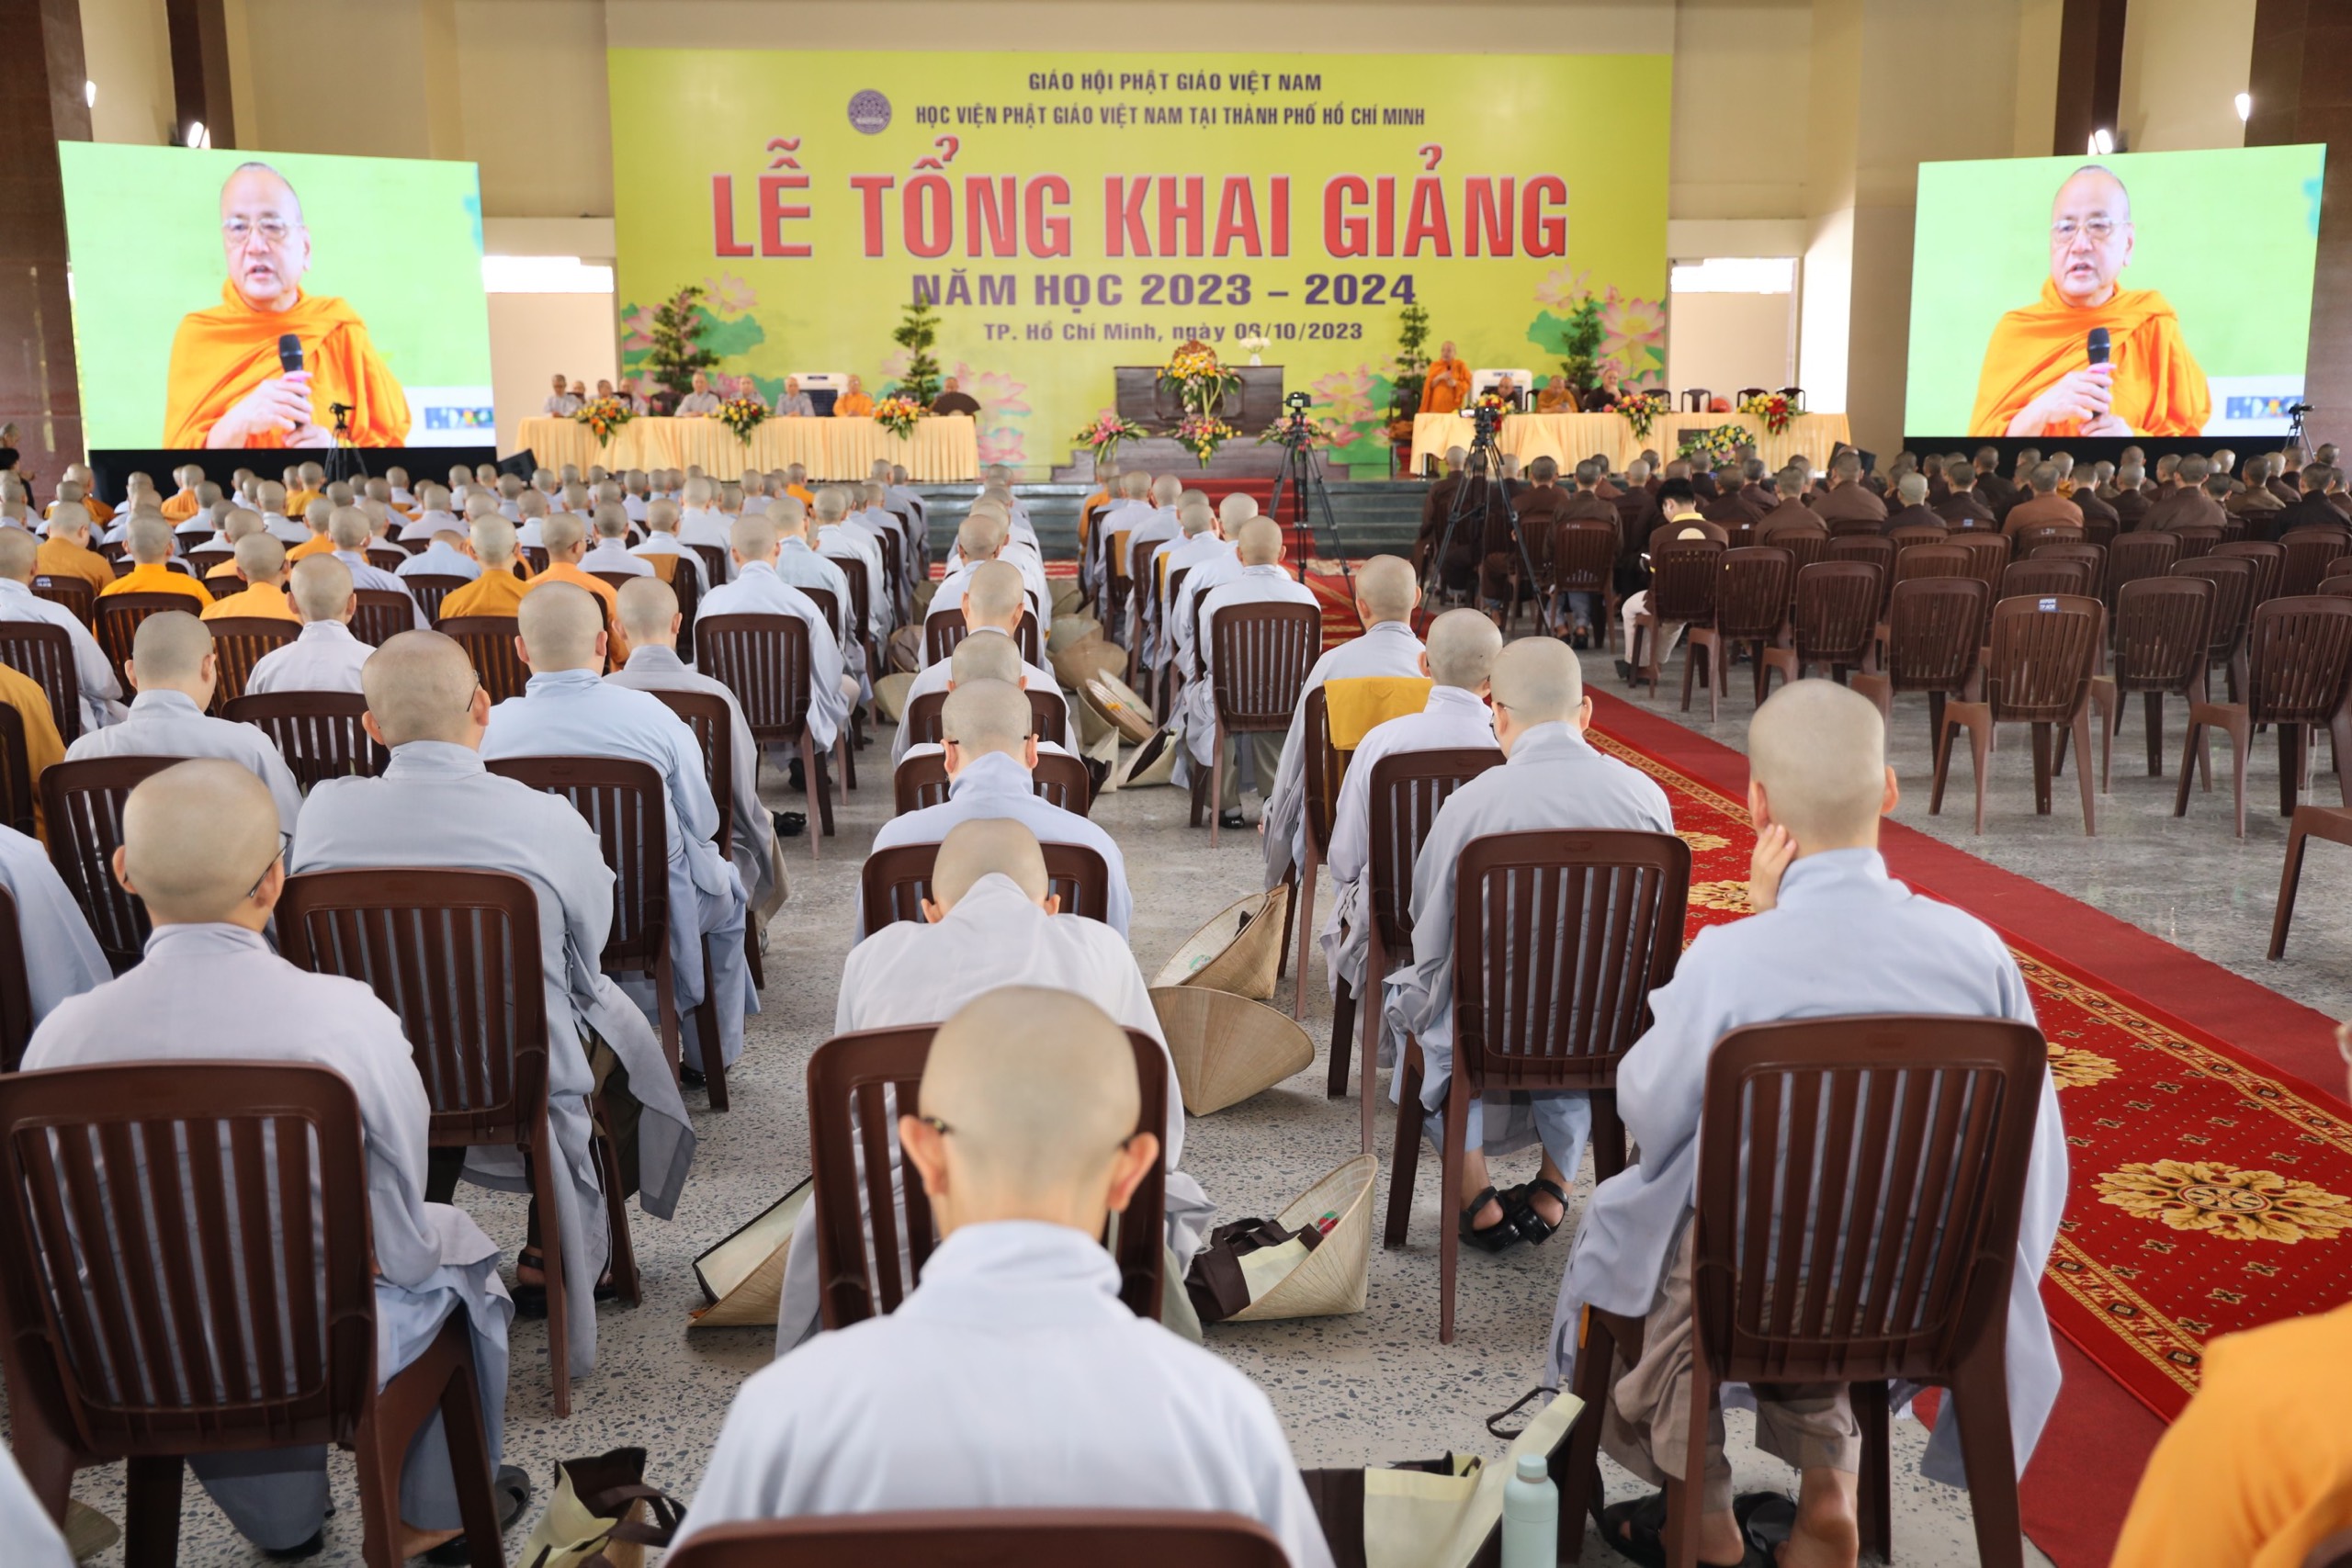 TPHCM: Học viện Phật giáo Việt Nam tổ chức lễ tổng khai giảng năm học 2023 - 2024 - z4759136425426_2ae47f677b53e3f10642924f71597f3b.jpg (790138 KB)